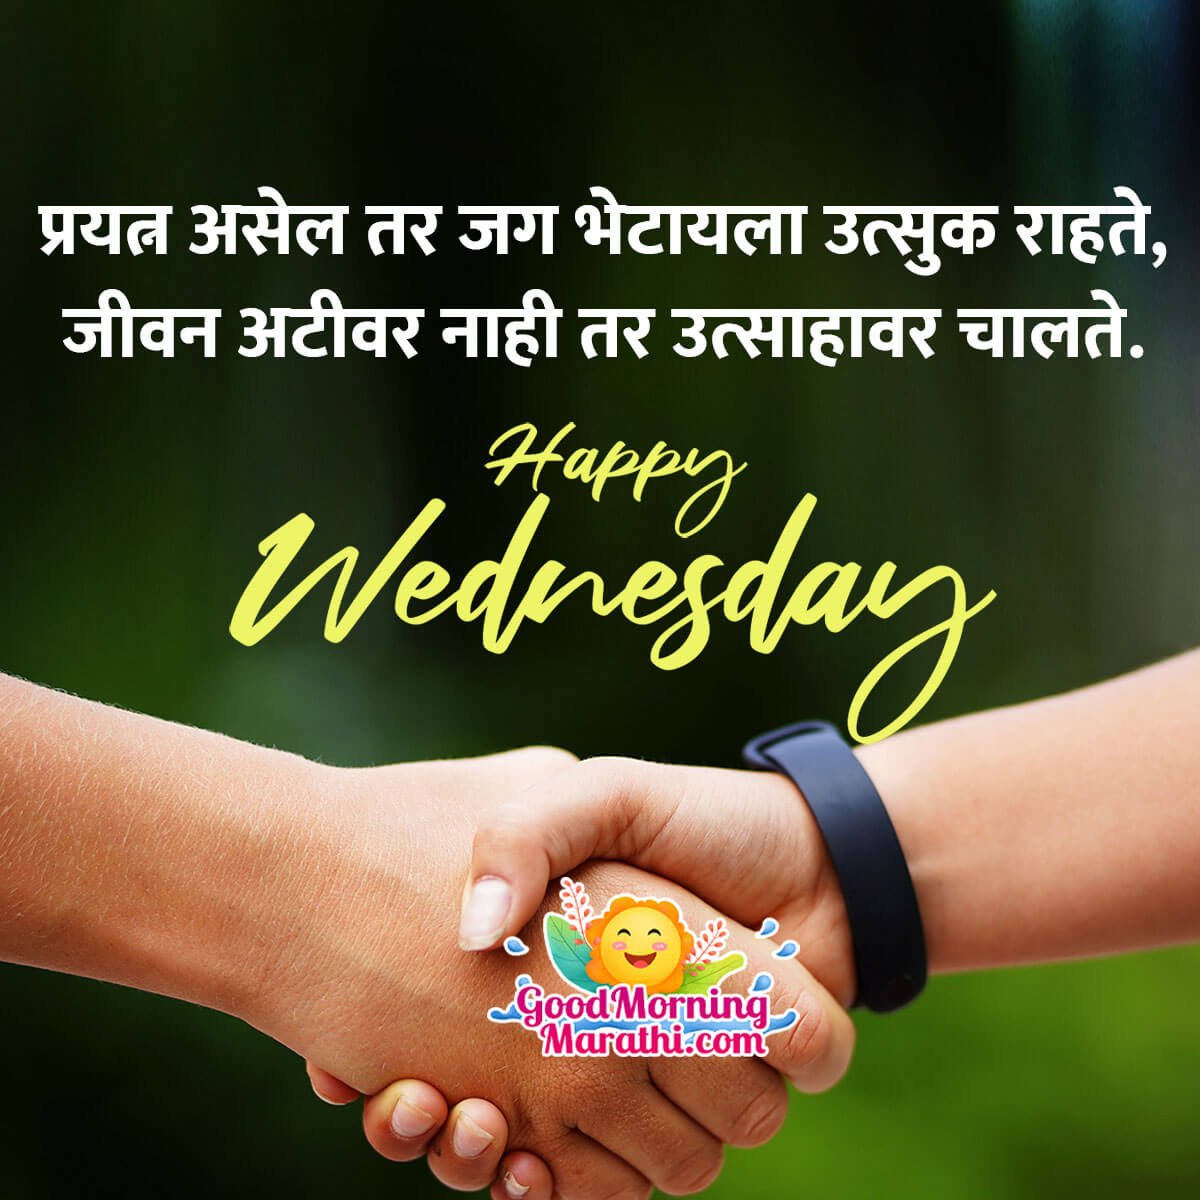 Happy Wednesday Marathi Image